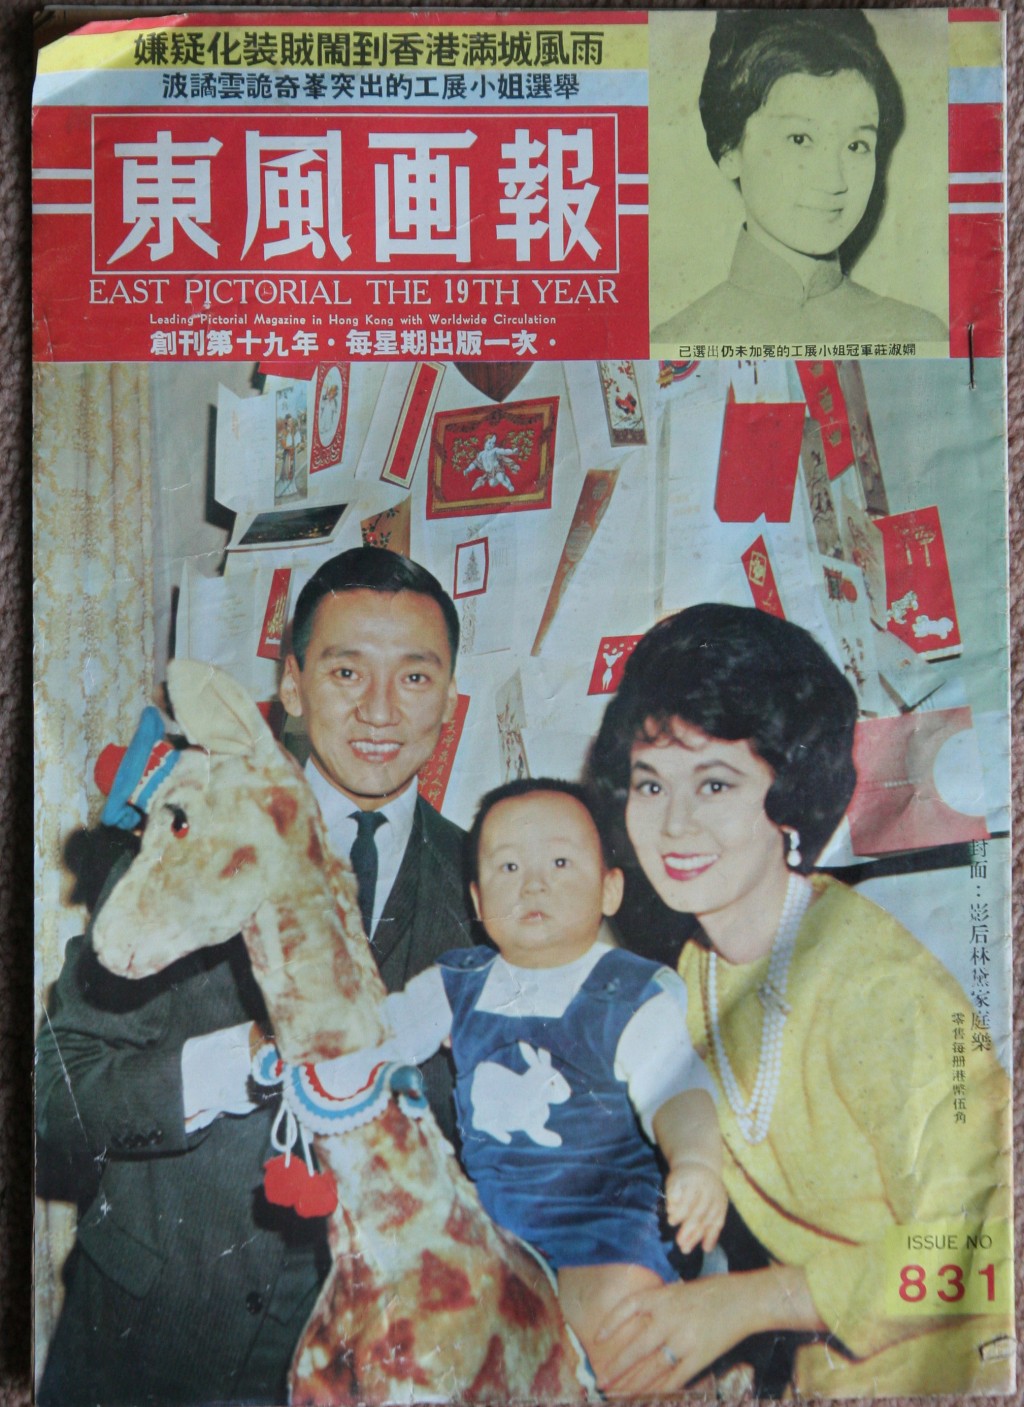 龍宗瀚於父母龍繩勳及林黛刊於《東風画報》封面的全家福。資料圖片